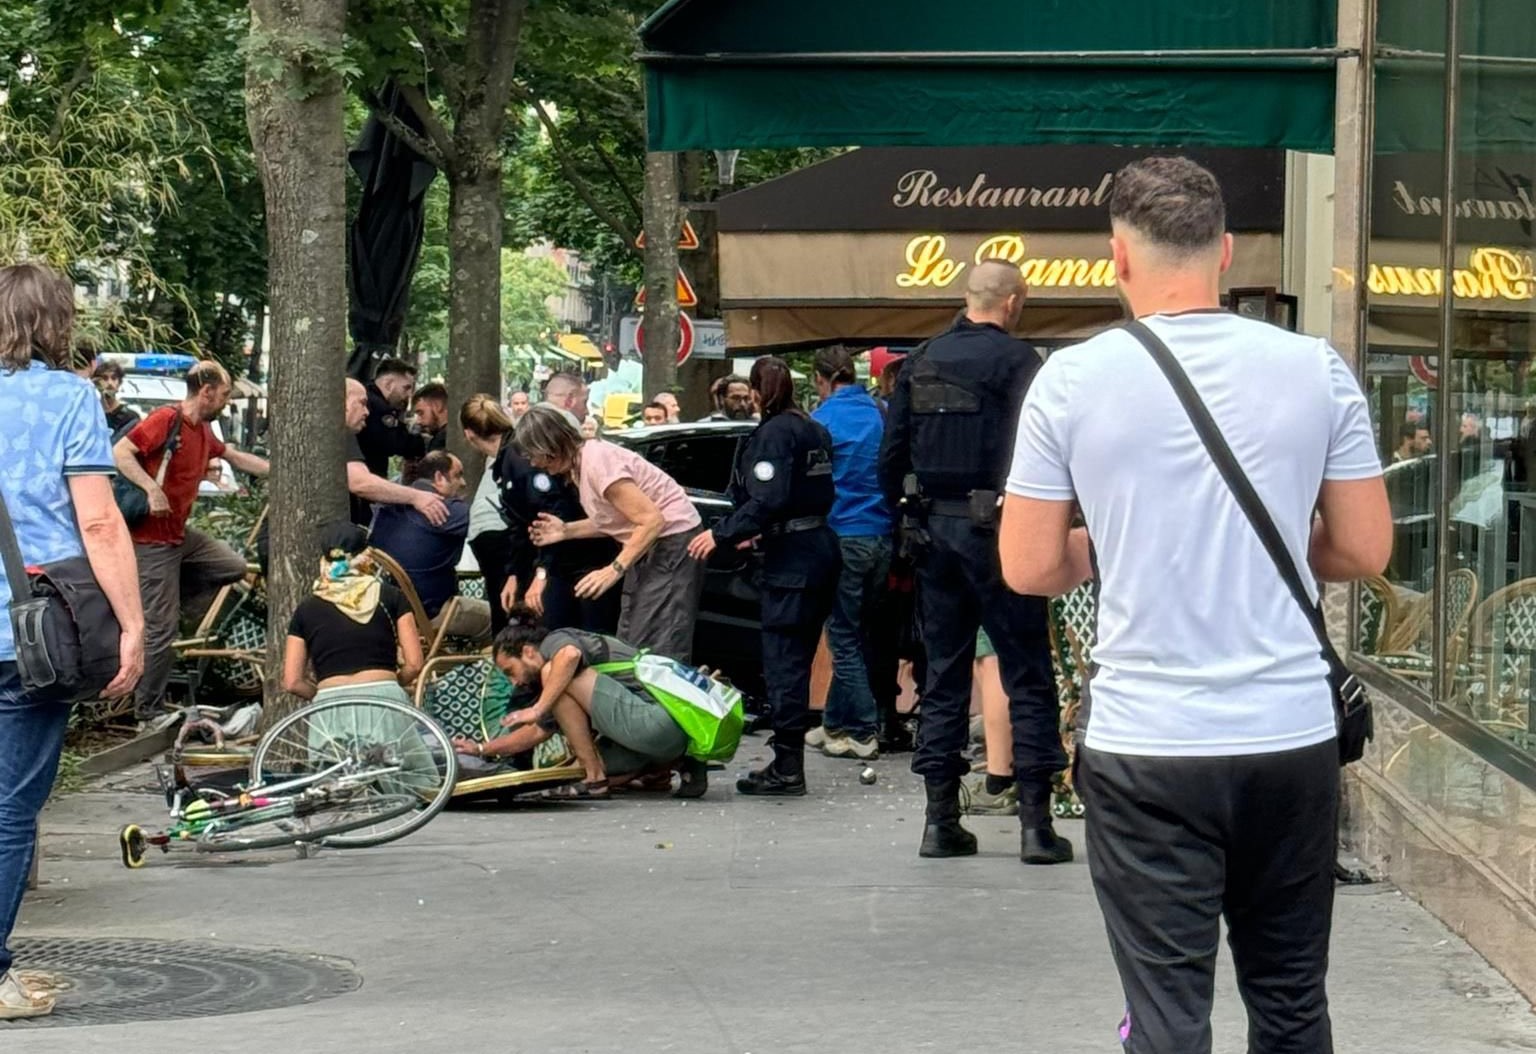 Παρίσι: Αυτοκίνητο παρέσυρε θαμώνες καφετέριας - Ένας νεκρός και έξι τραυματίας, οι δύο σε κρίσιμη κατάσταση